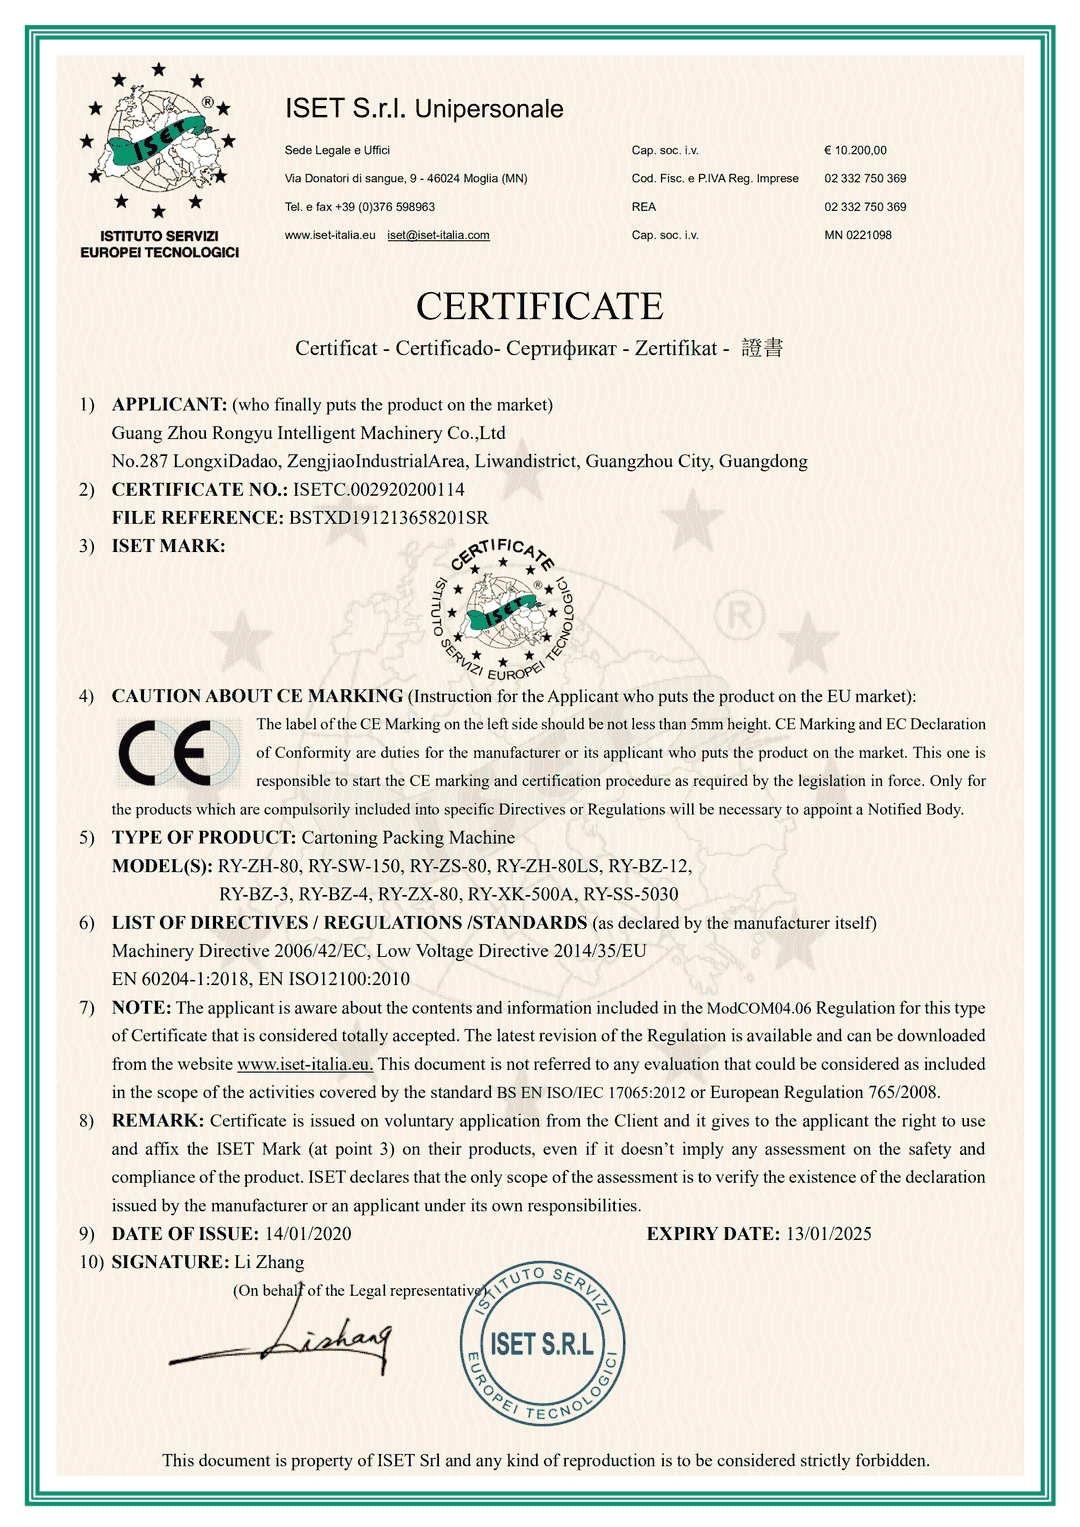 装盒机CE证书